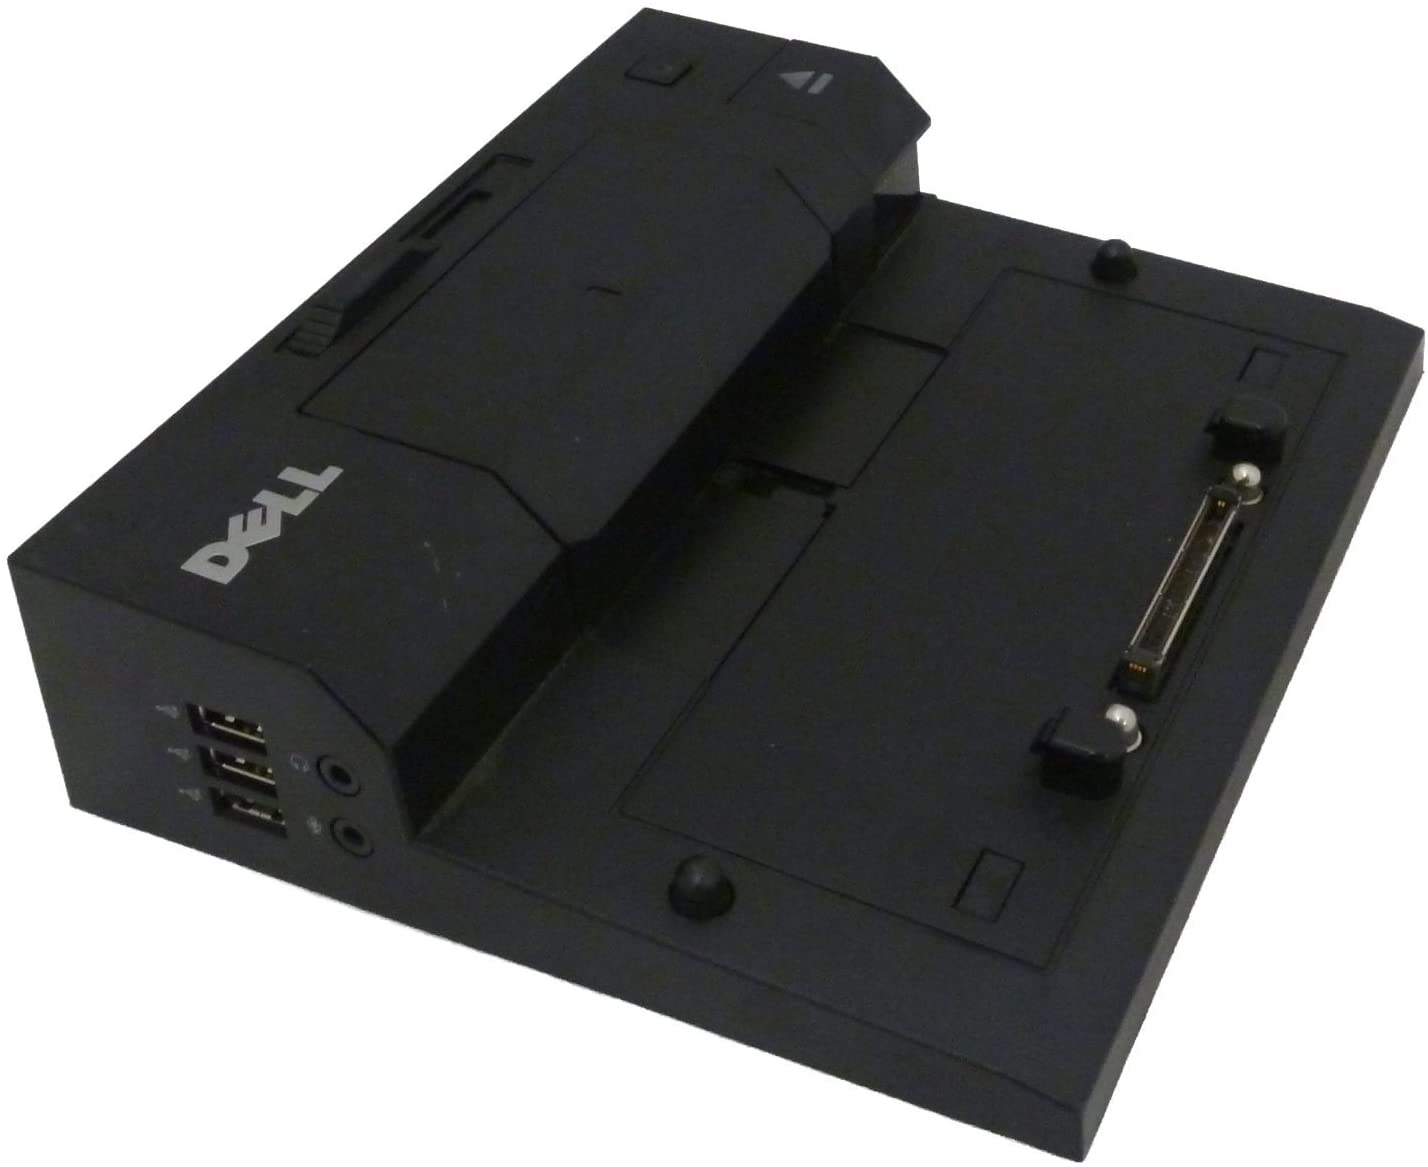 Dell - Port Replicator E5570 (PR03X) Docking Station per notebook Latitude E5450 E5540 E5550 E7440 E7450